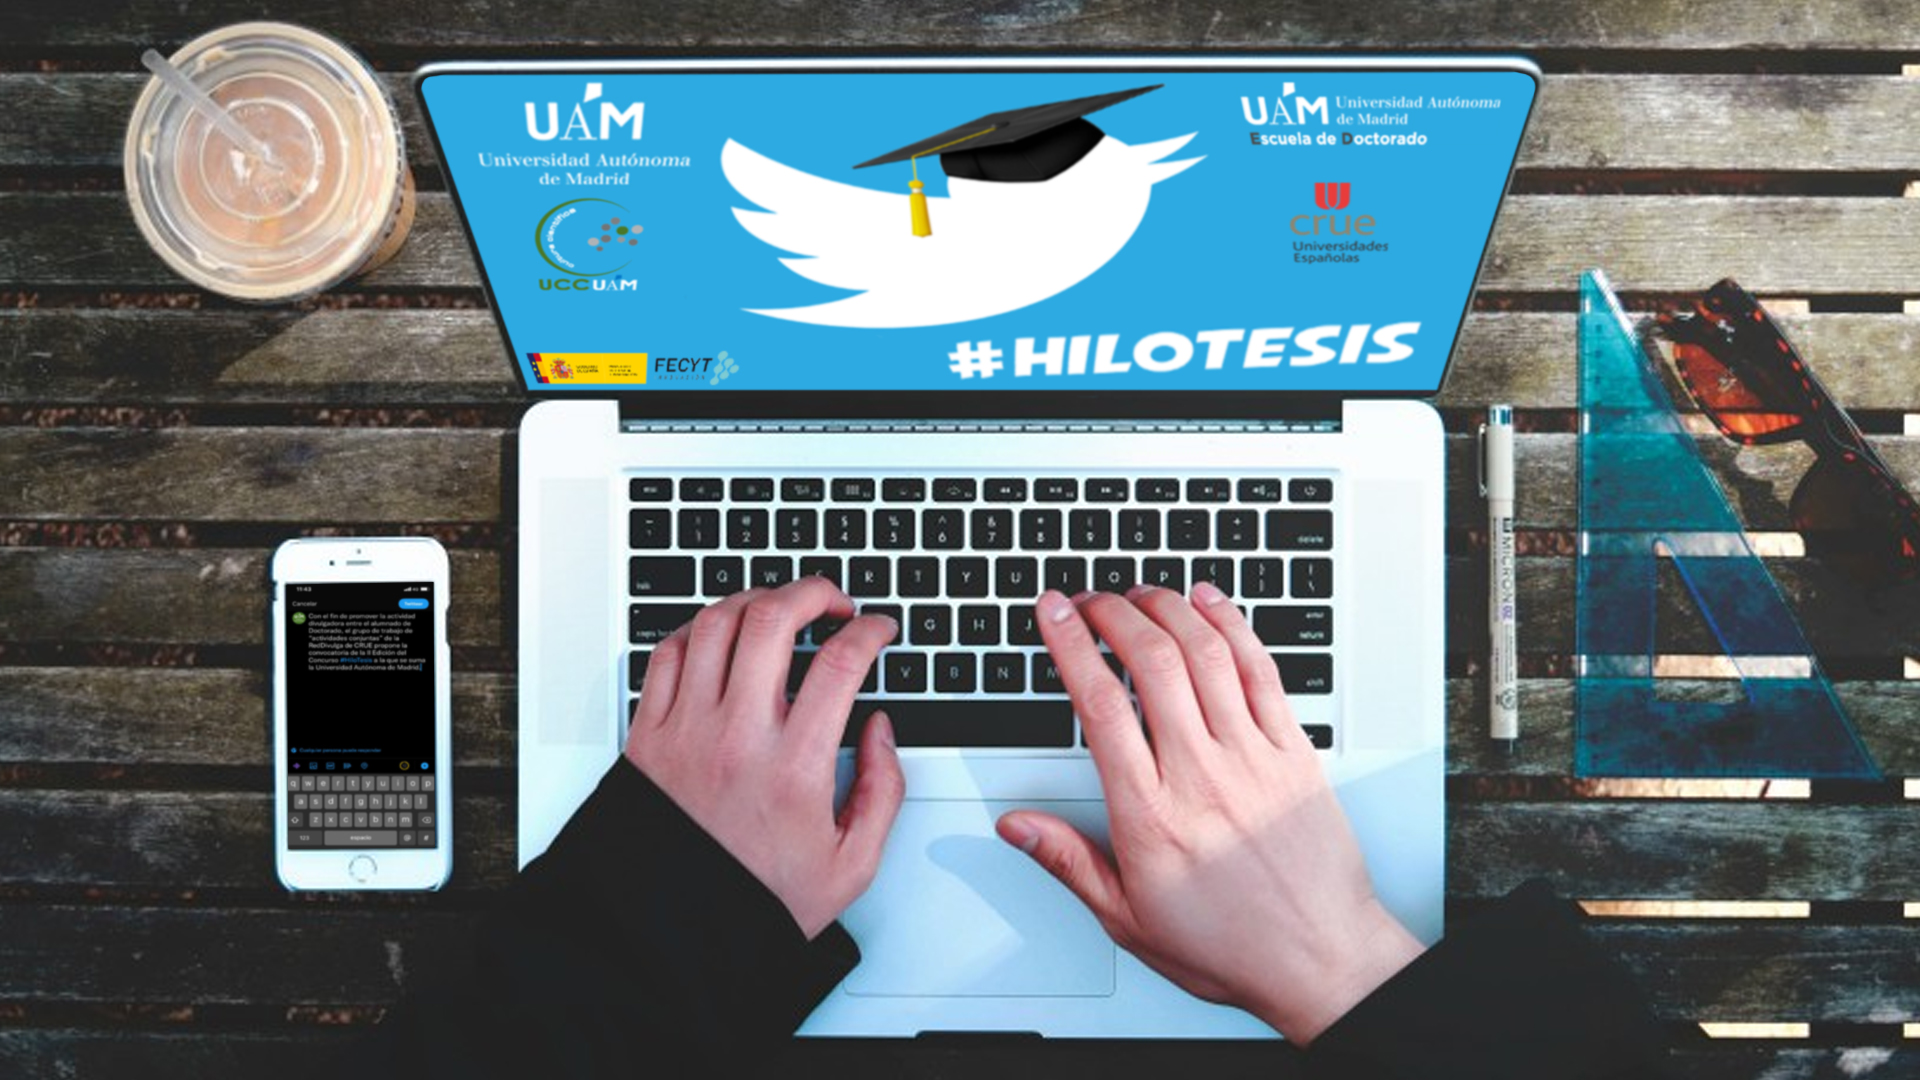 Imagen del logo del concurso HiloTesis en la UAM